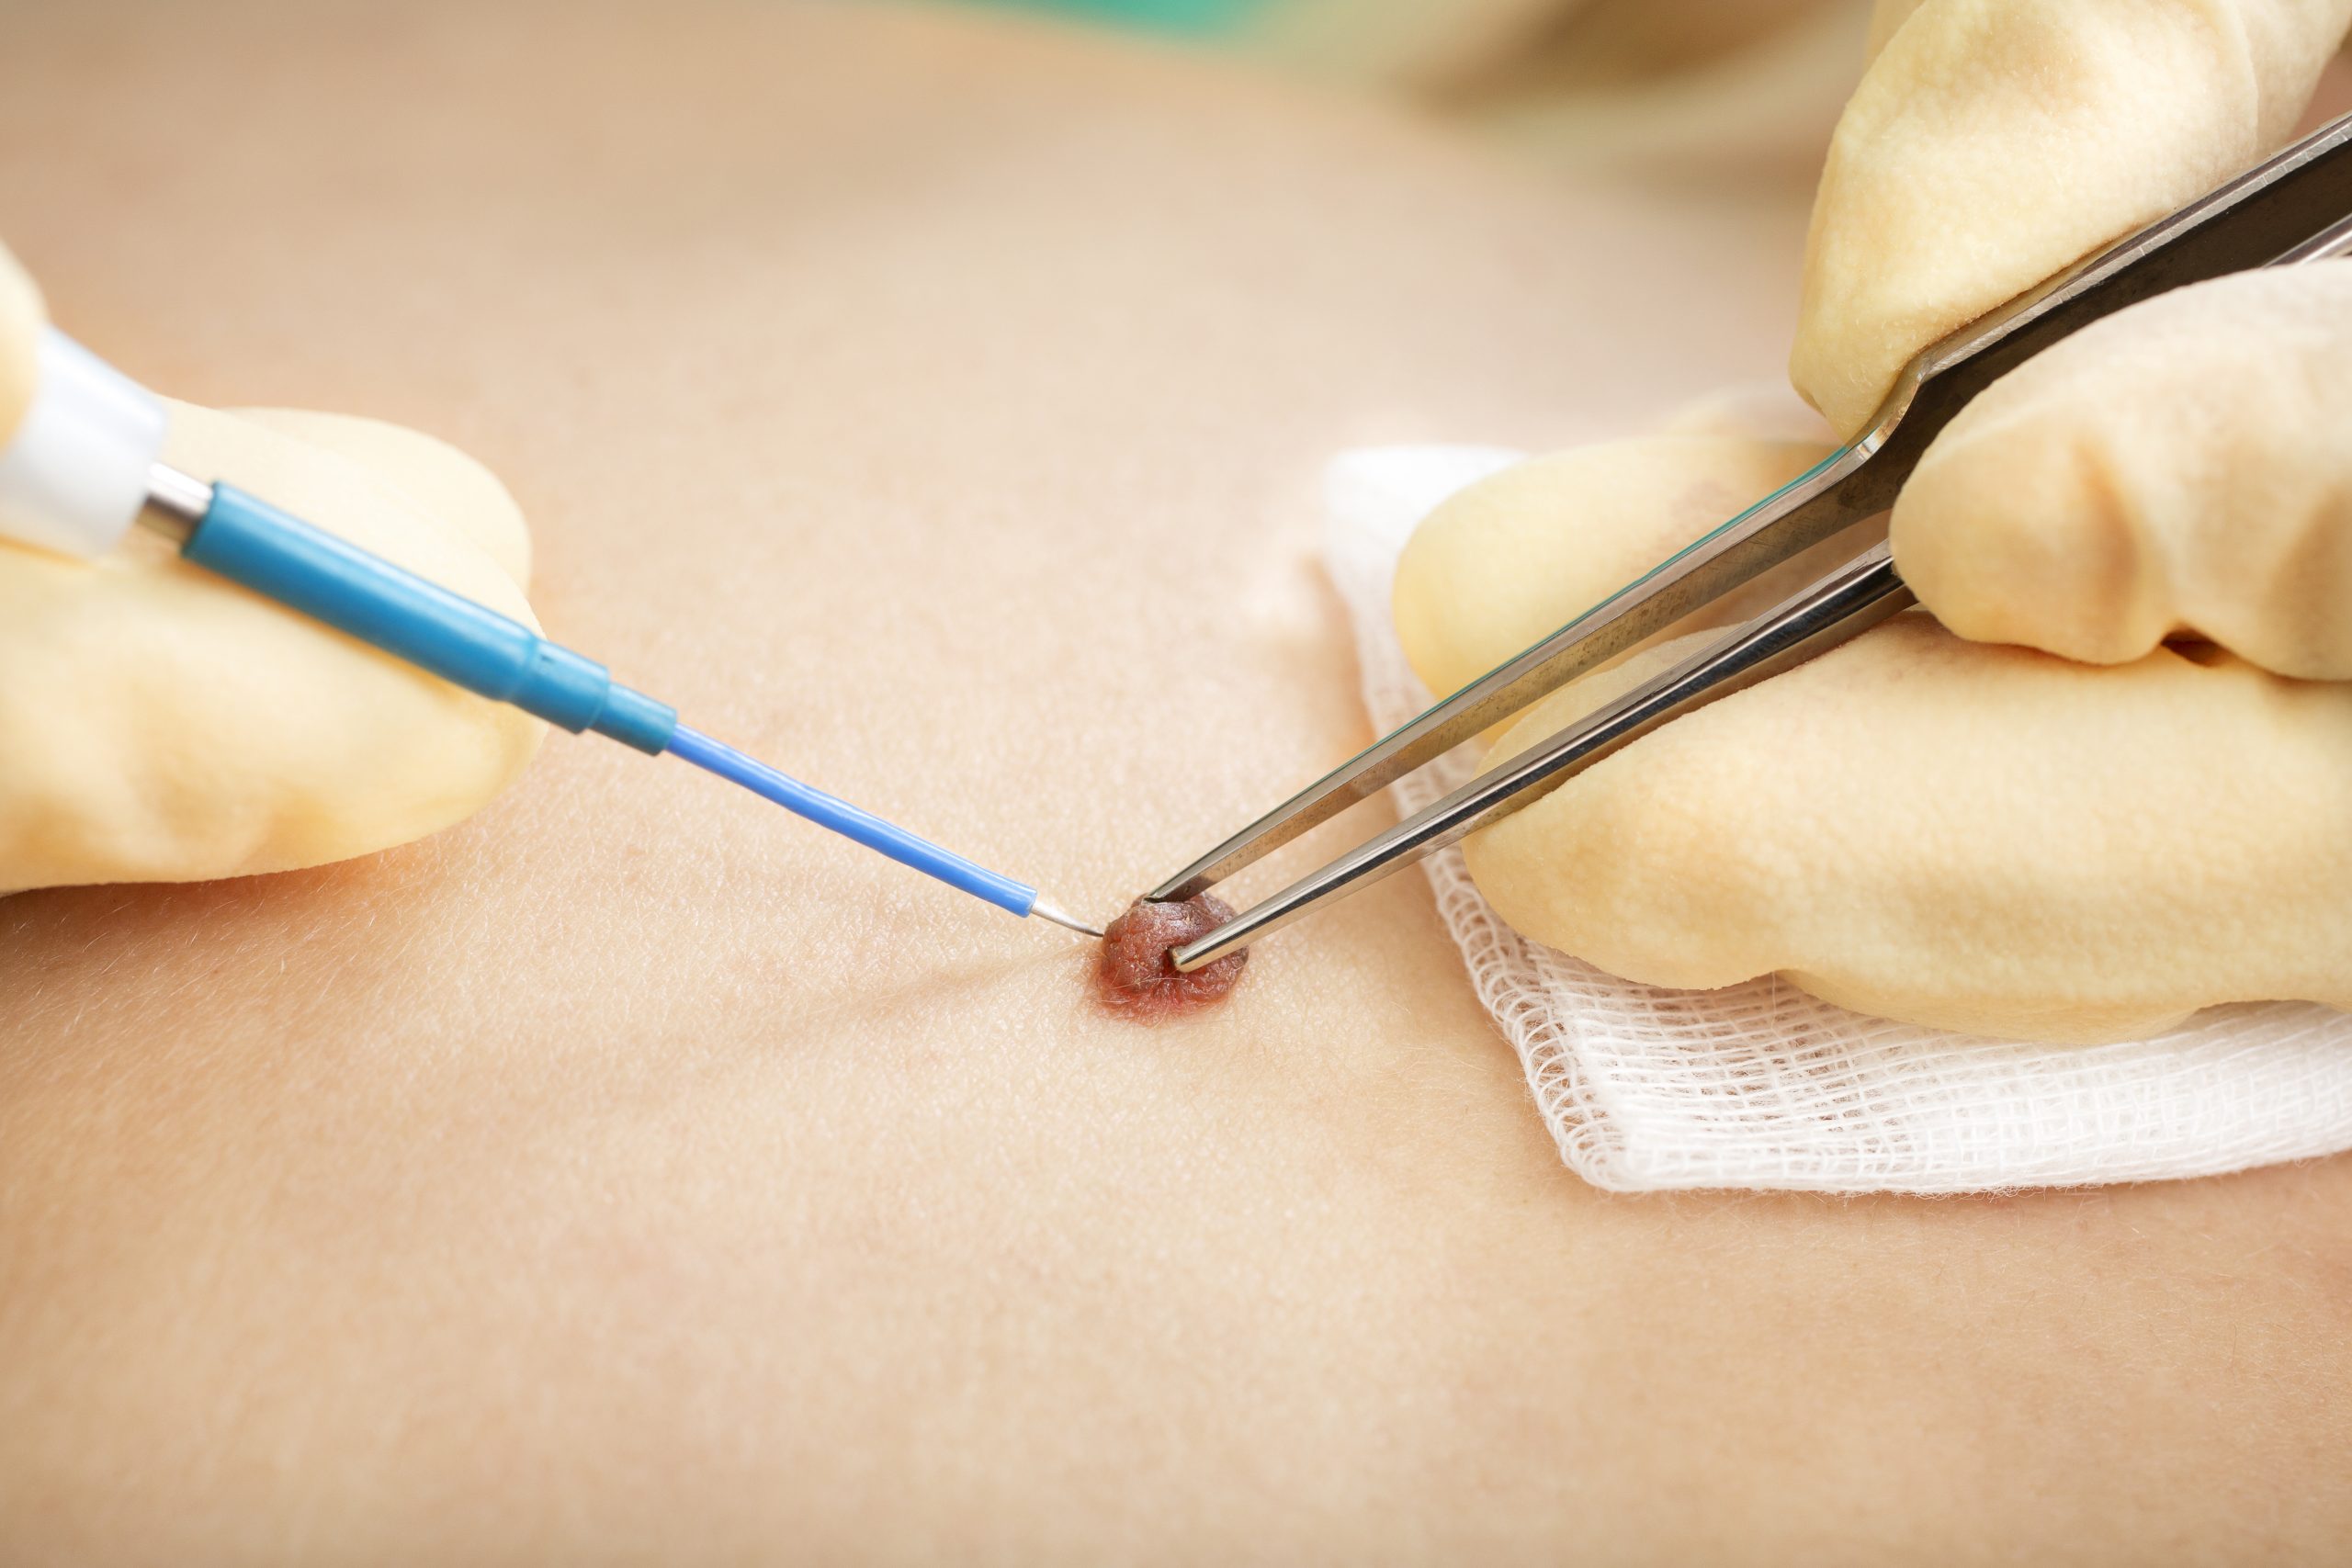 Electrosurgery skin